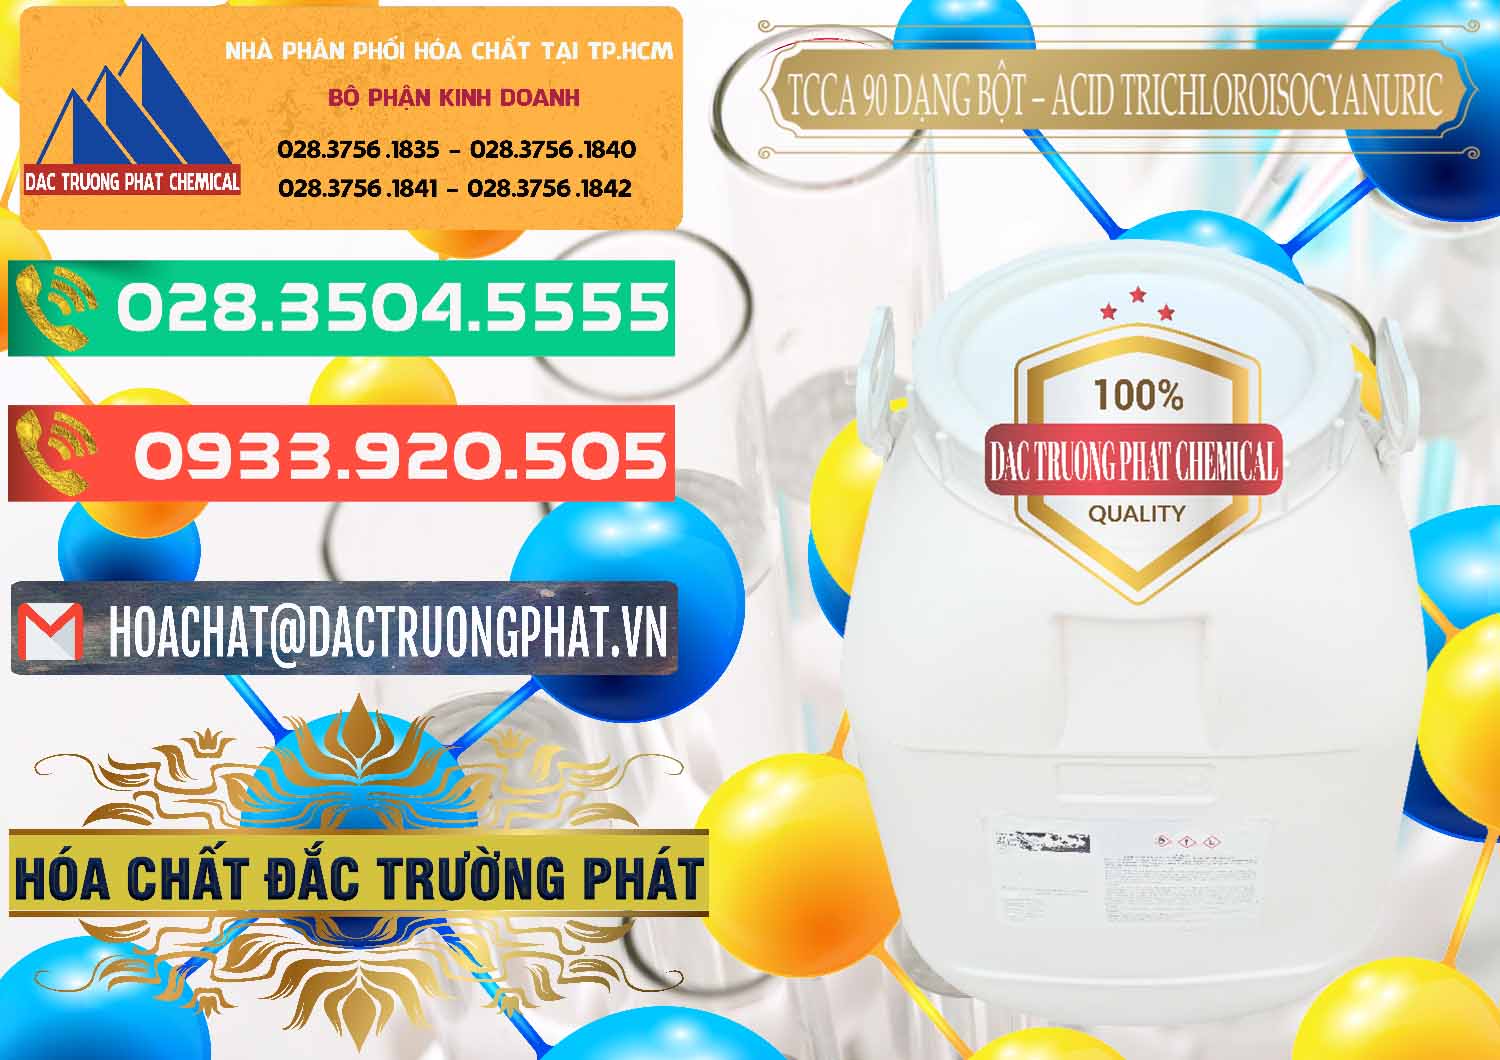 Chuyên bán - cung ứng TCCA - Acid Trichloroisocyanuric 90% Dạng Bột Trung Quốc China - 0161 - Nơi chuyên nhập khẩu - phân phối hóa chất tại TP.HCM - congtyhoachat.com.vn